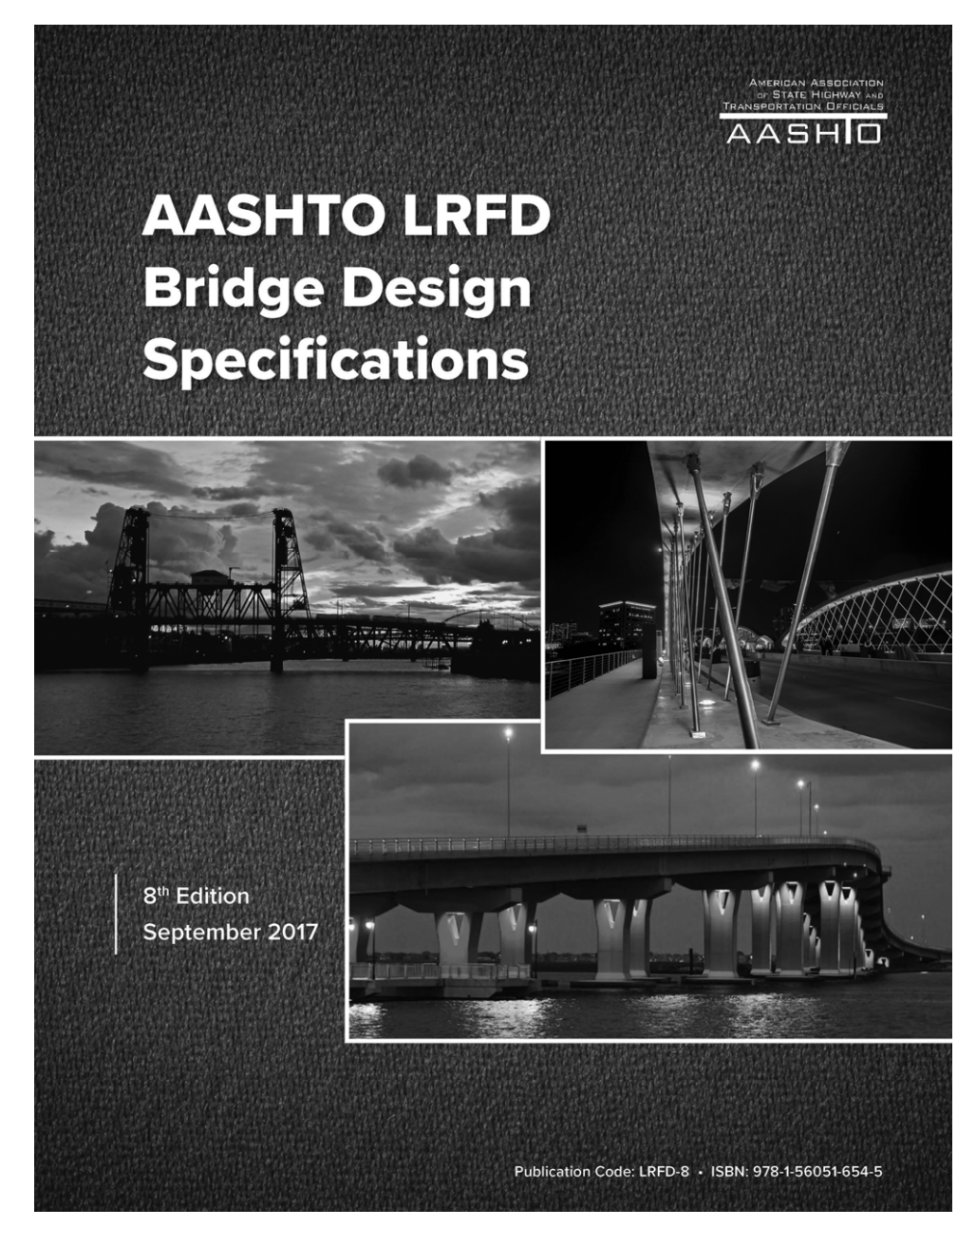 aashto lrfd design specifications Bulan 3 AASHTO LRFD Bridge Design Specifications [PUB] - South Carolina